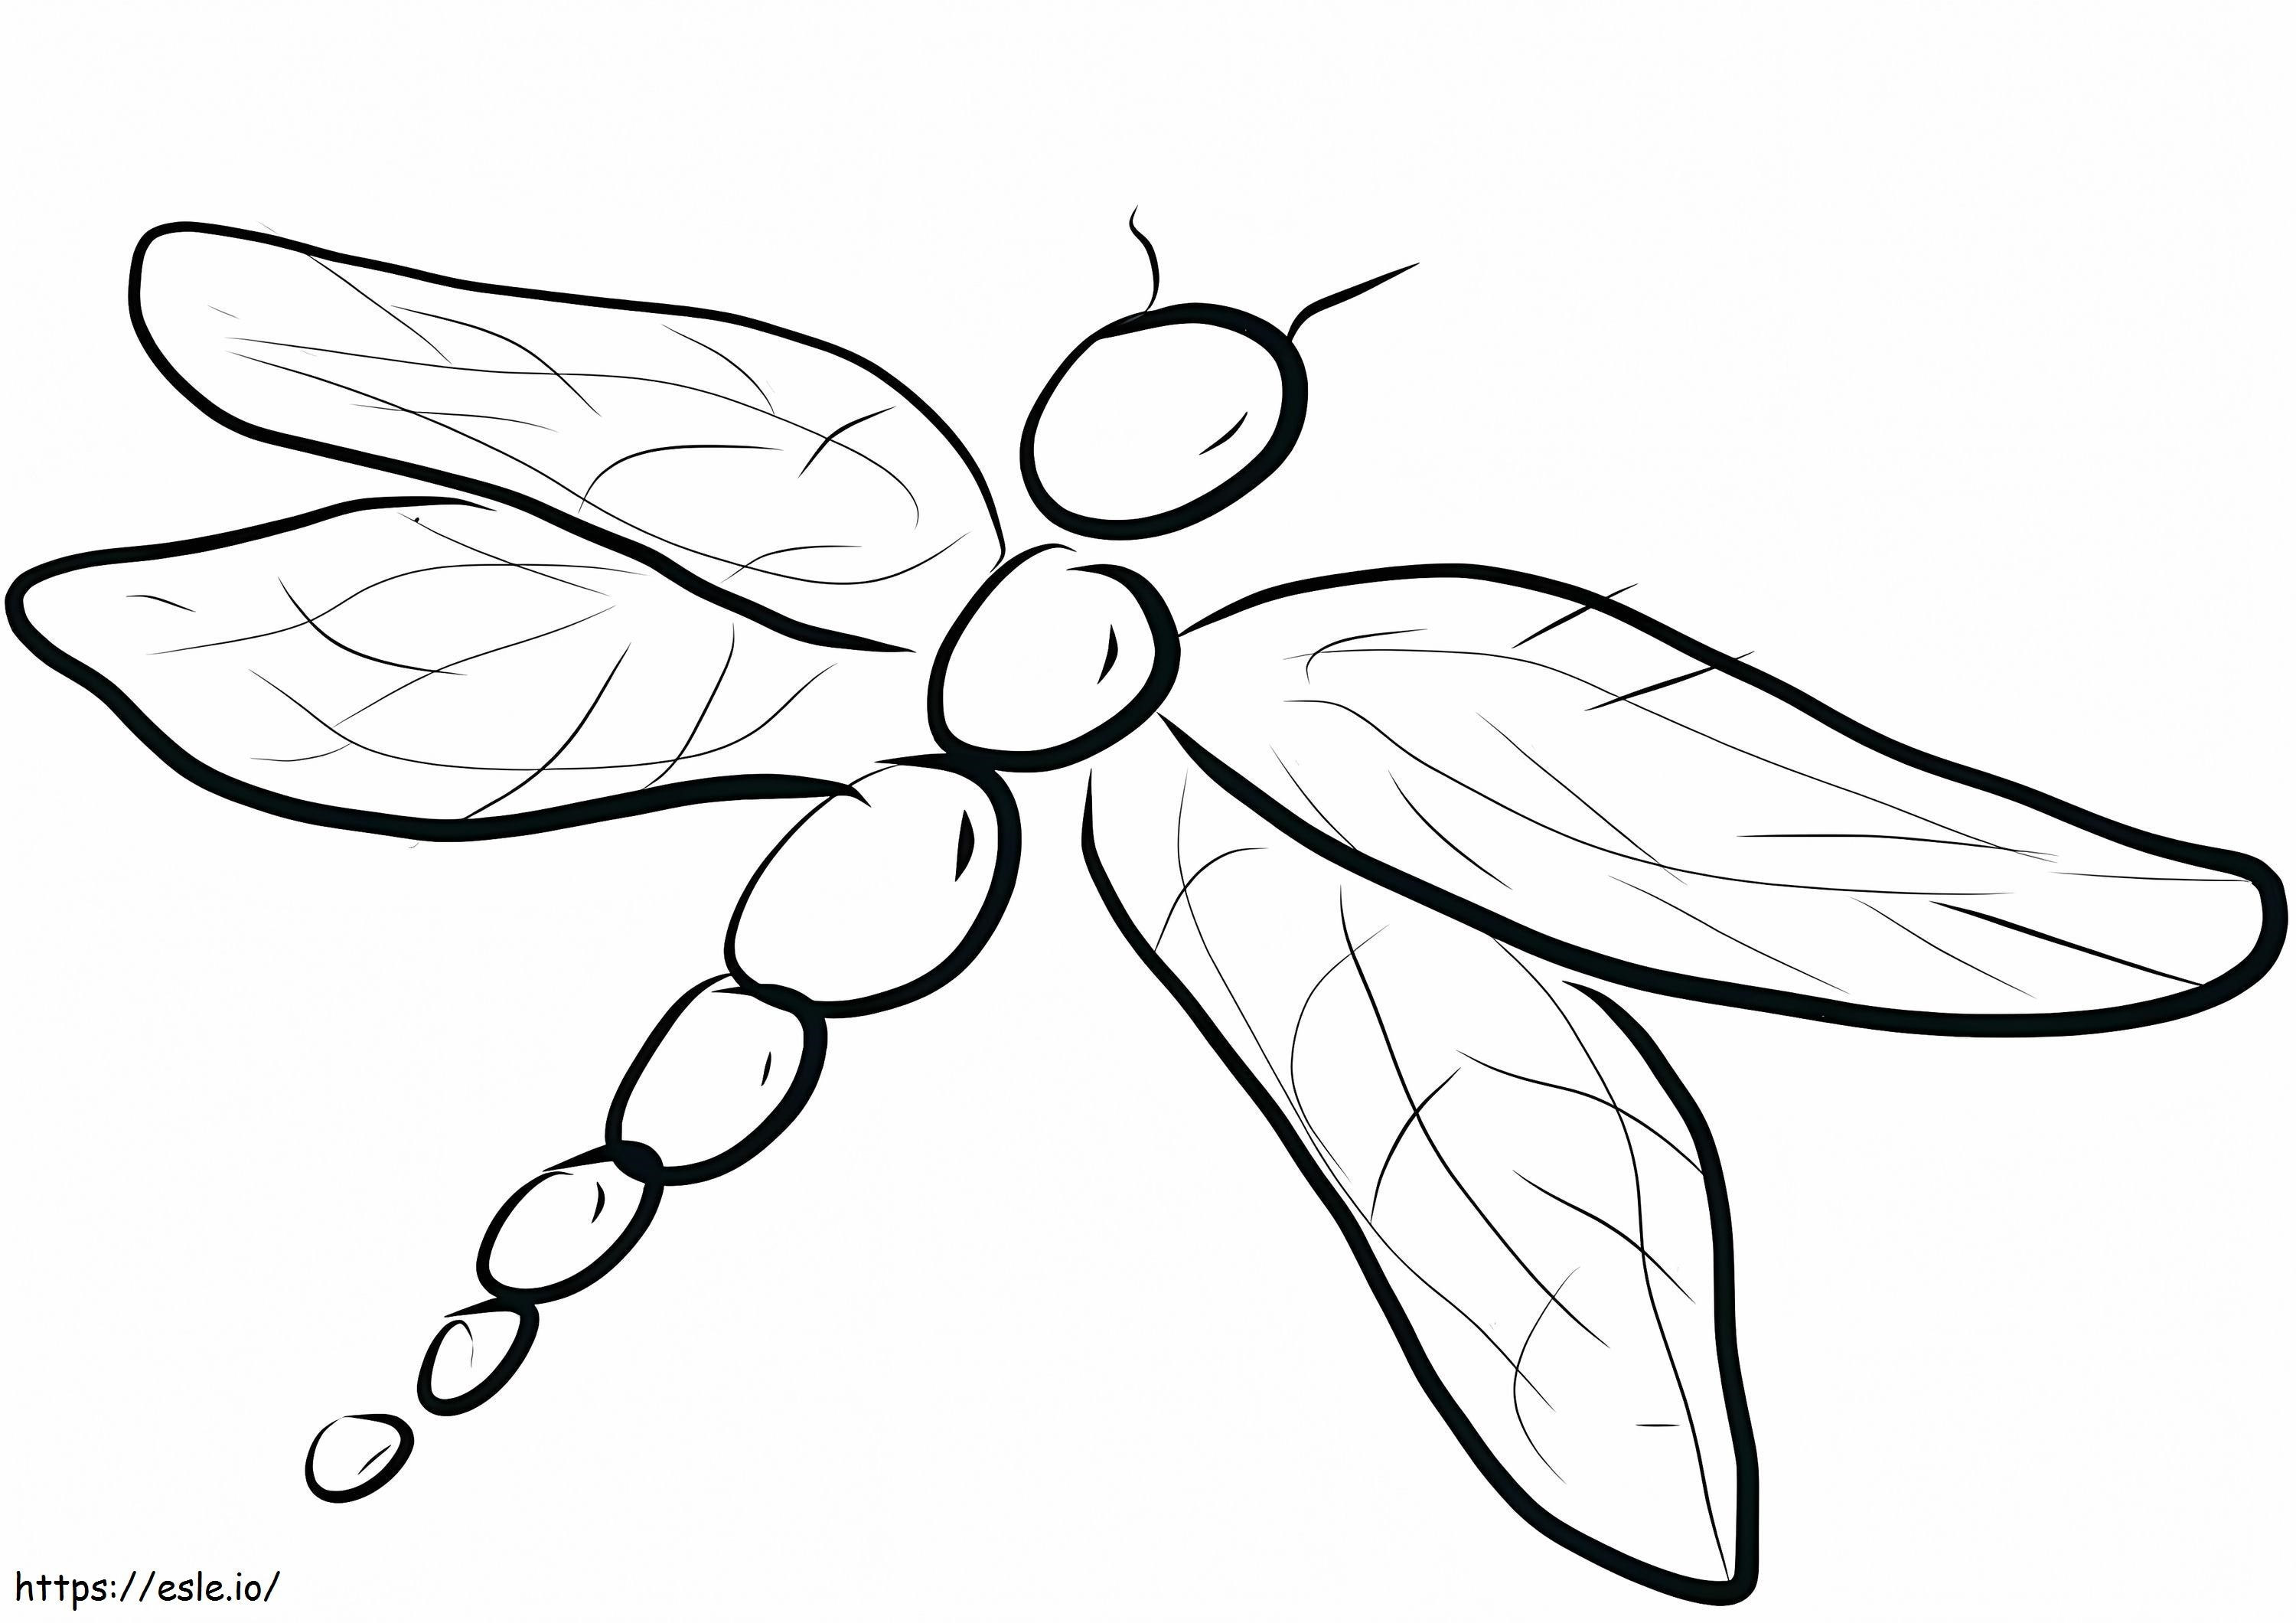 Eine einfache Libelle ausmalbilder